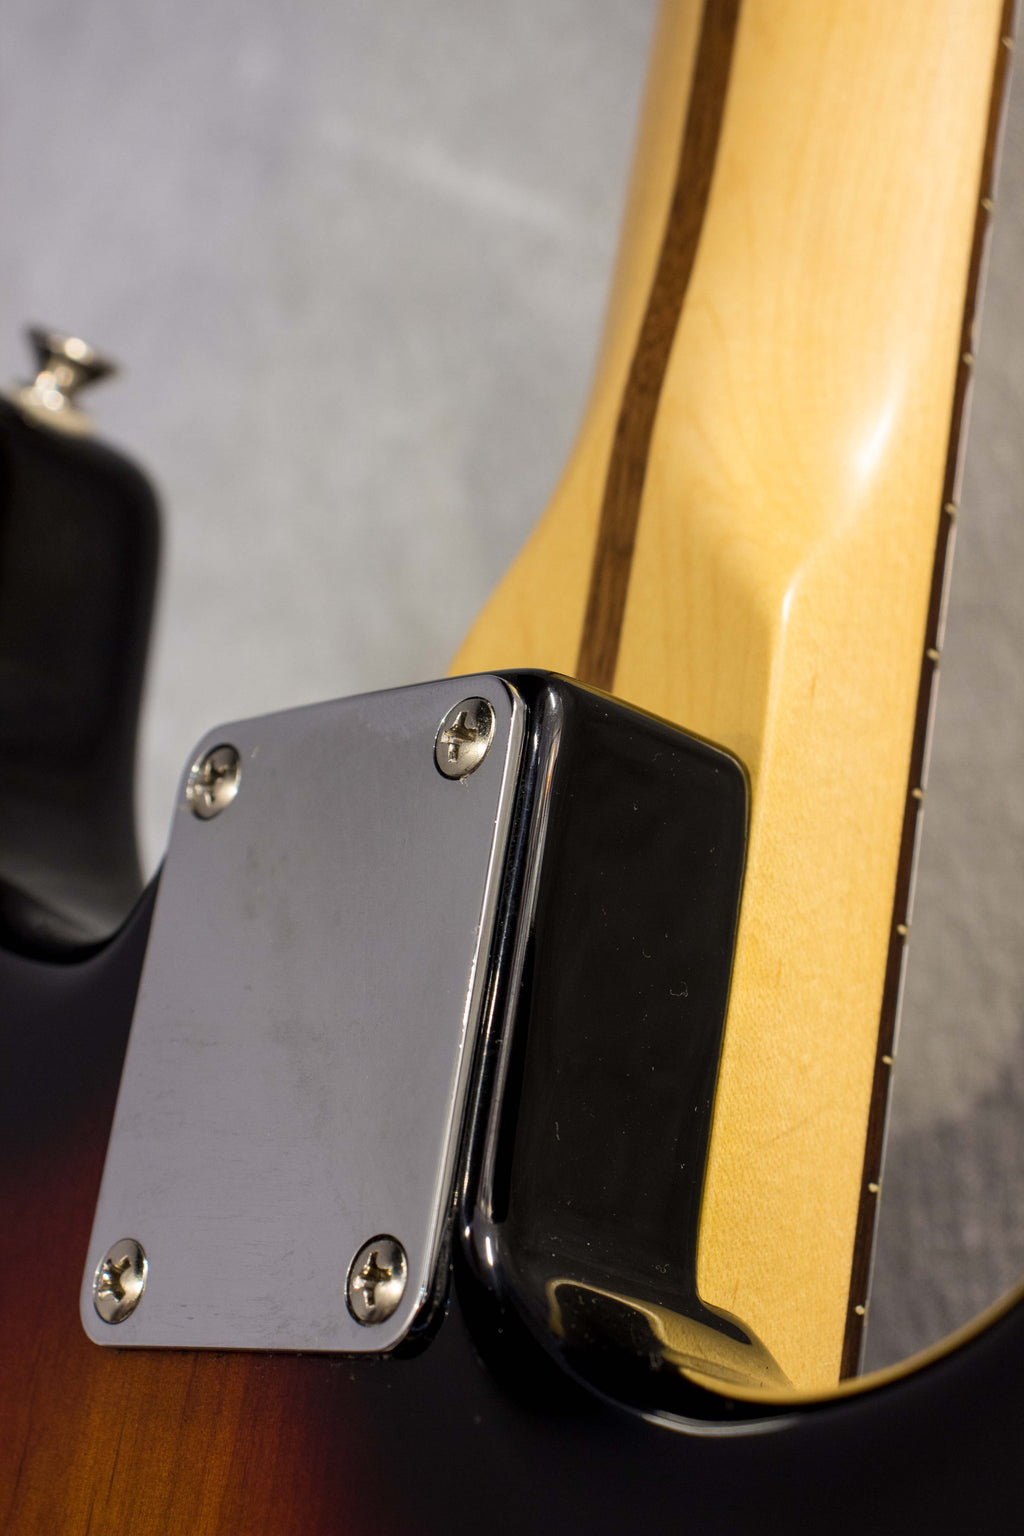 Fender Standard Stratocaster Sunburst Left Handed 2012